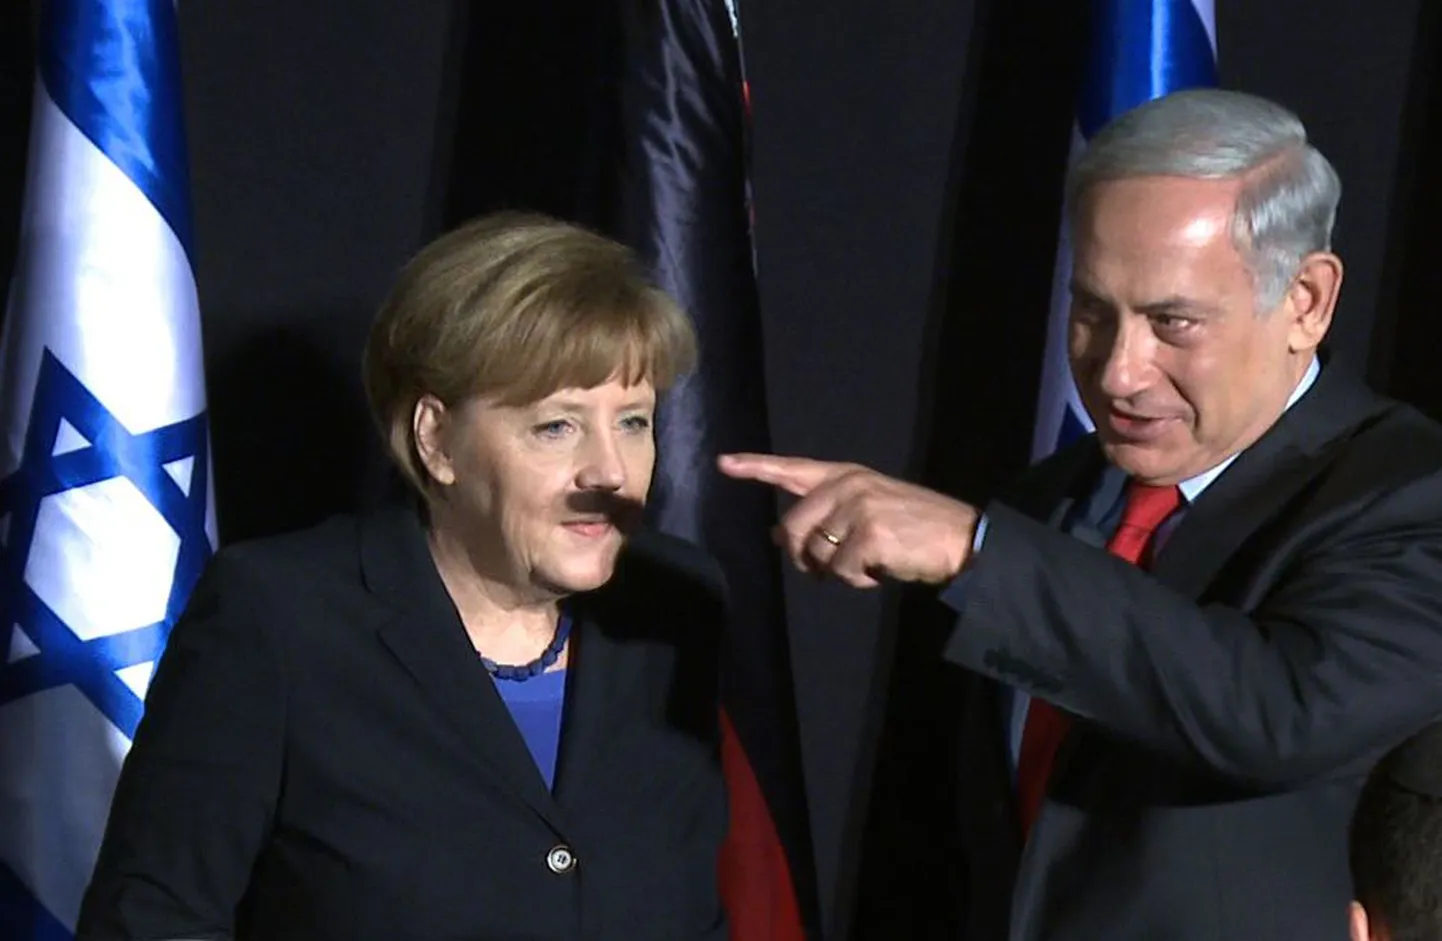 Saksamaa kantsler Angela Merkel (vasakul) sai Iisraeli peaministri Benjamin Netanyahu (paremal) käeliigutuse tulemusel nina alla kurikuulsat saksalast Adolf Hitlerit meenutavad vuntsid.